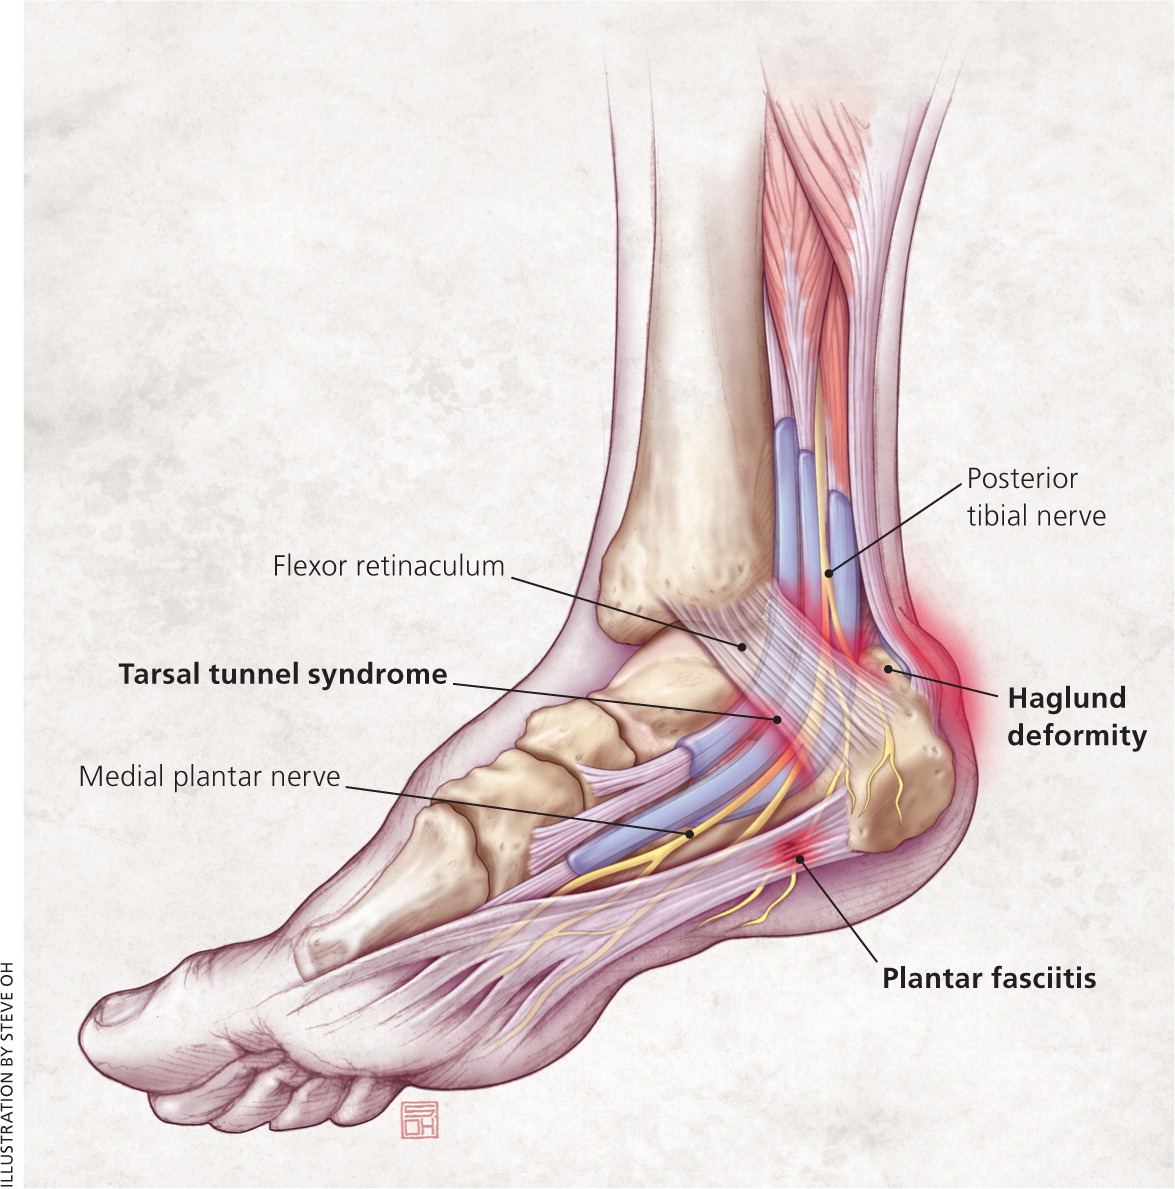 Orthopedics: How Do I Treat Heel Pain? - Warner Orthopedics